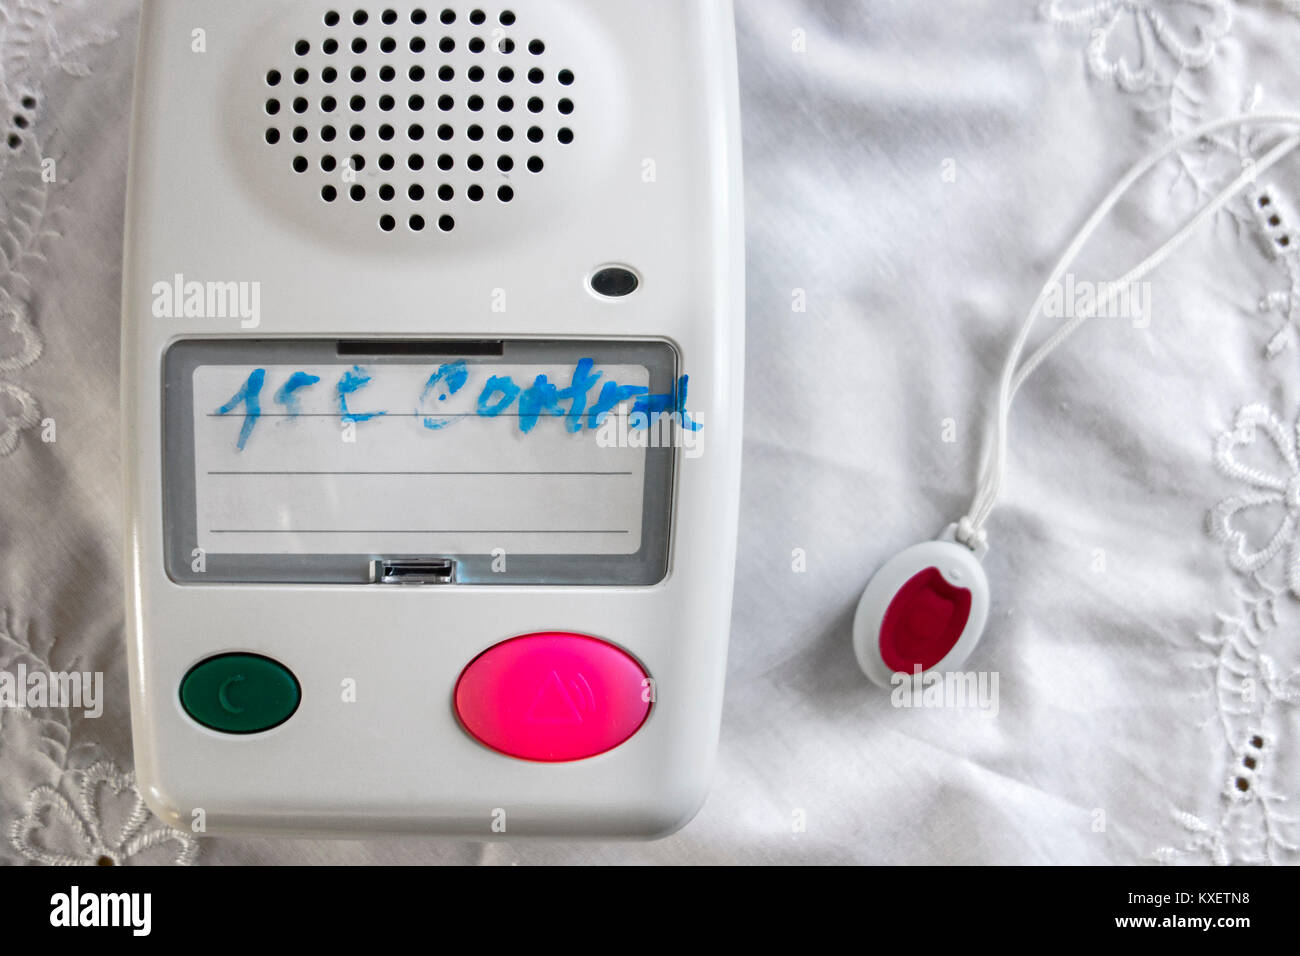 Alarme personnelle de sauvetage pour les personnes âgées et handicapées montrant pendentif avec bouton poussoir et l'unité d'alarme avec haut-parleur Banque D'Images